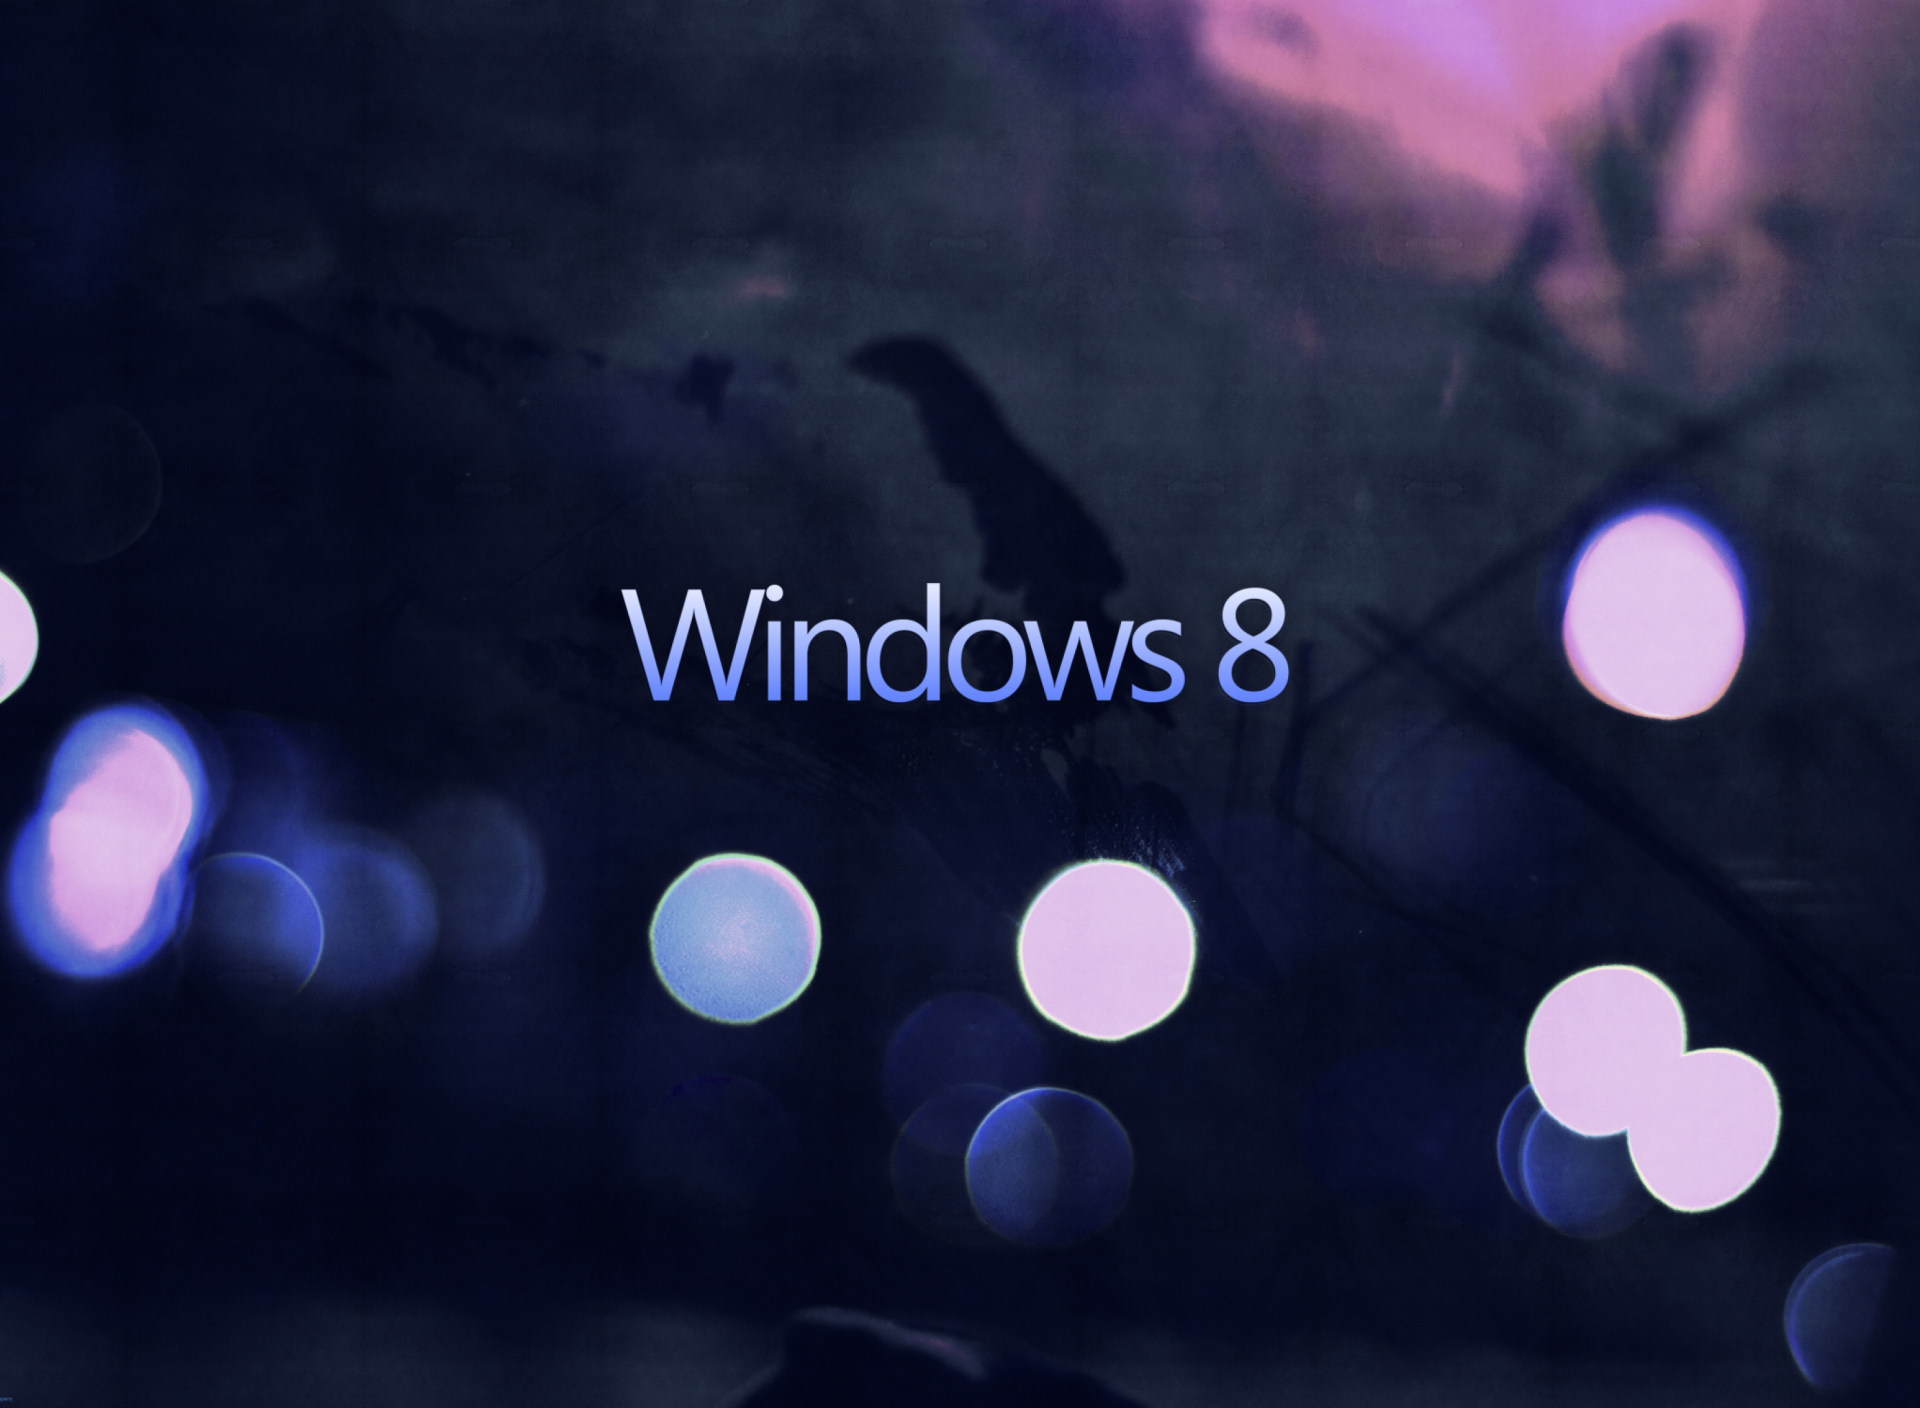 Windows 8 - Hi-Tech screenshot #1 1920x1408